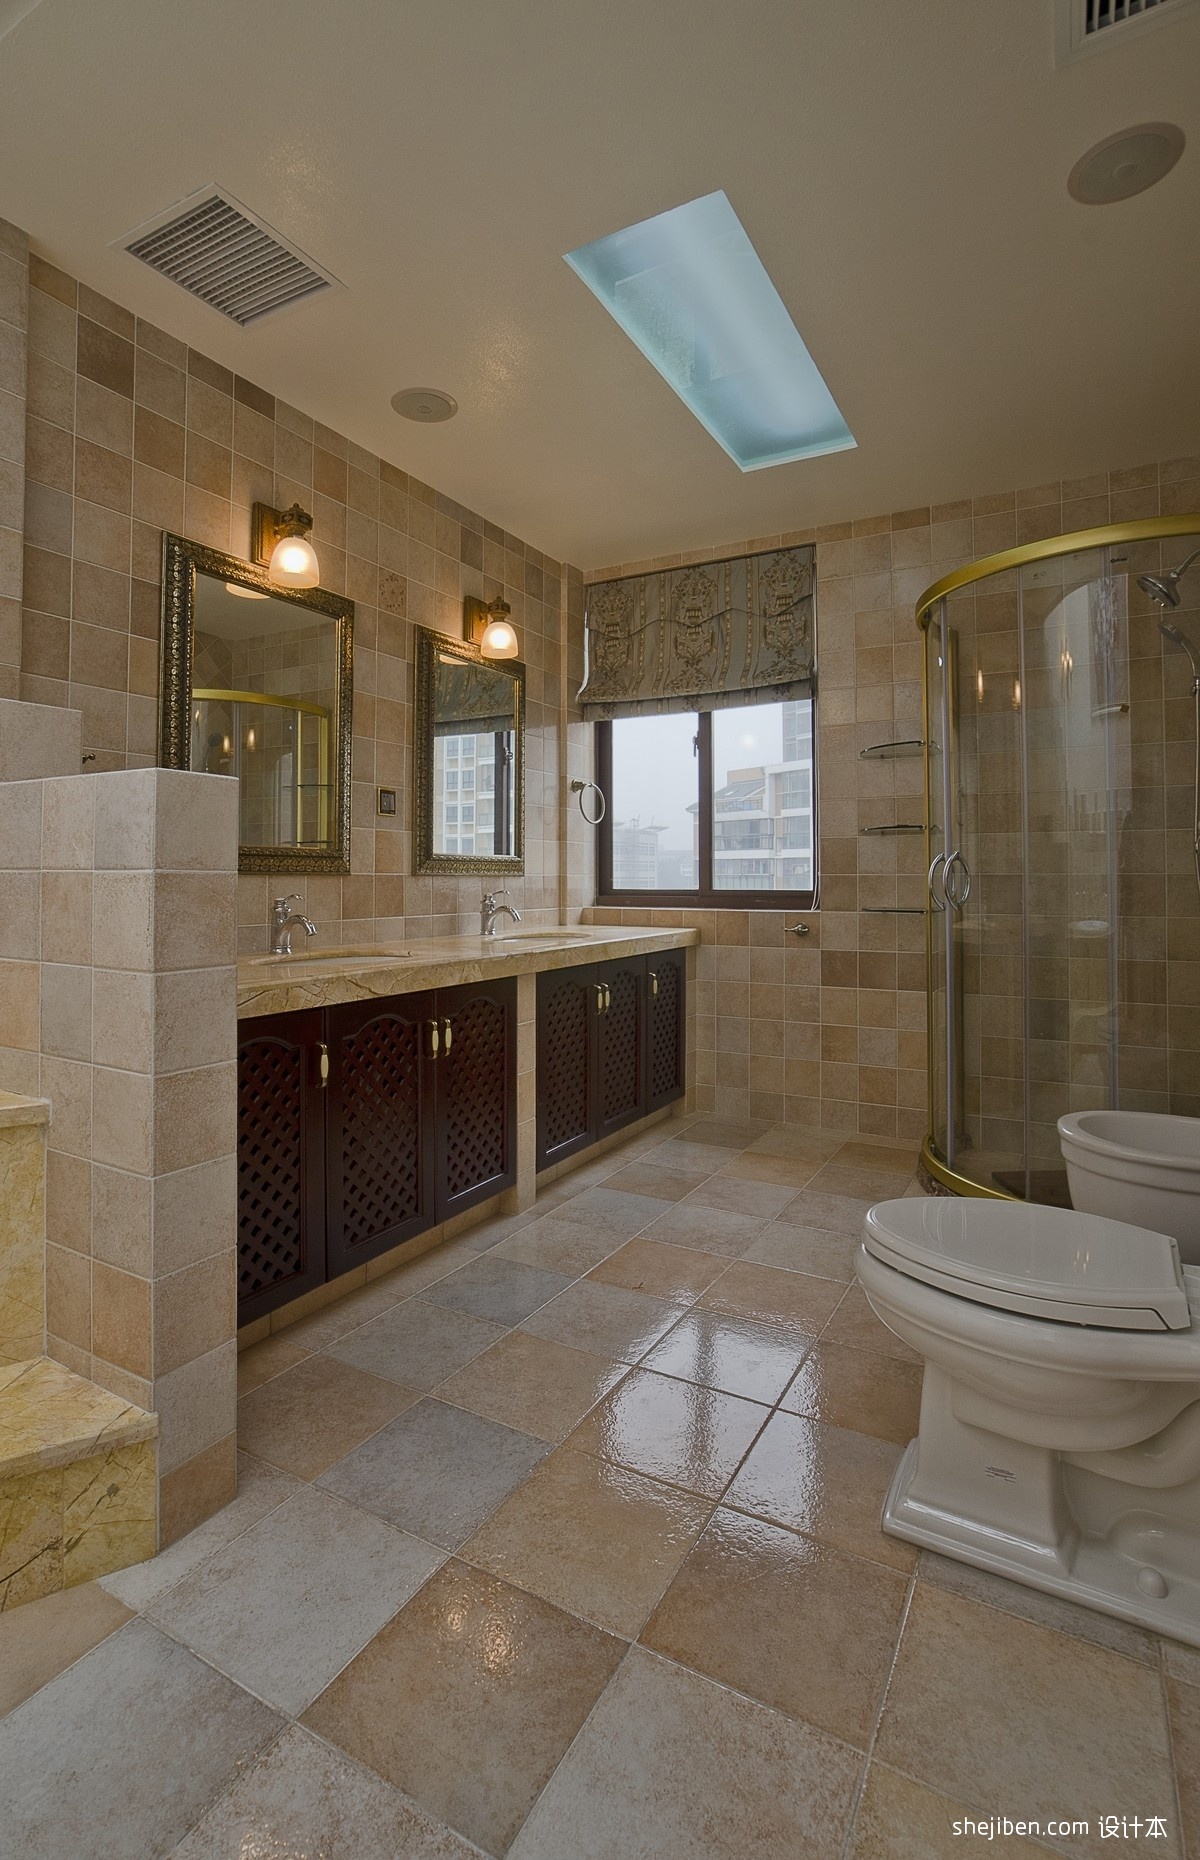 美式风格别墅豪华大卫生间吊顶淋浴房大理石瓷砖装修图片